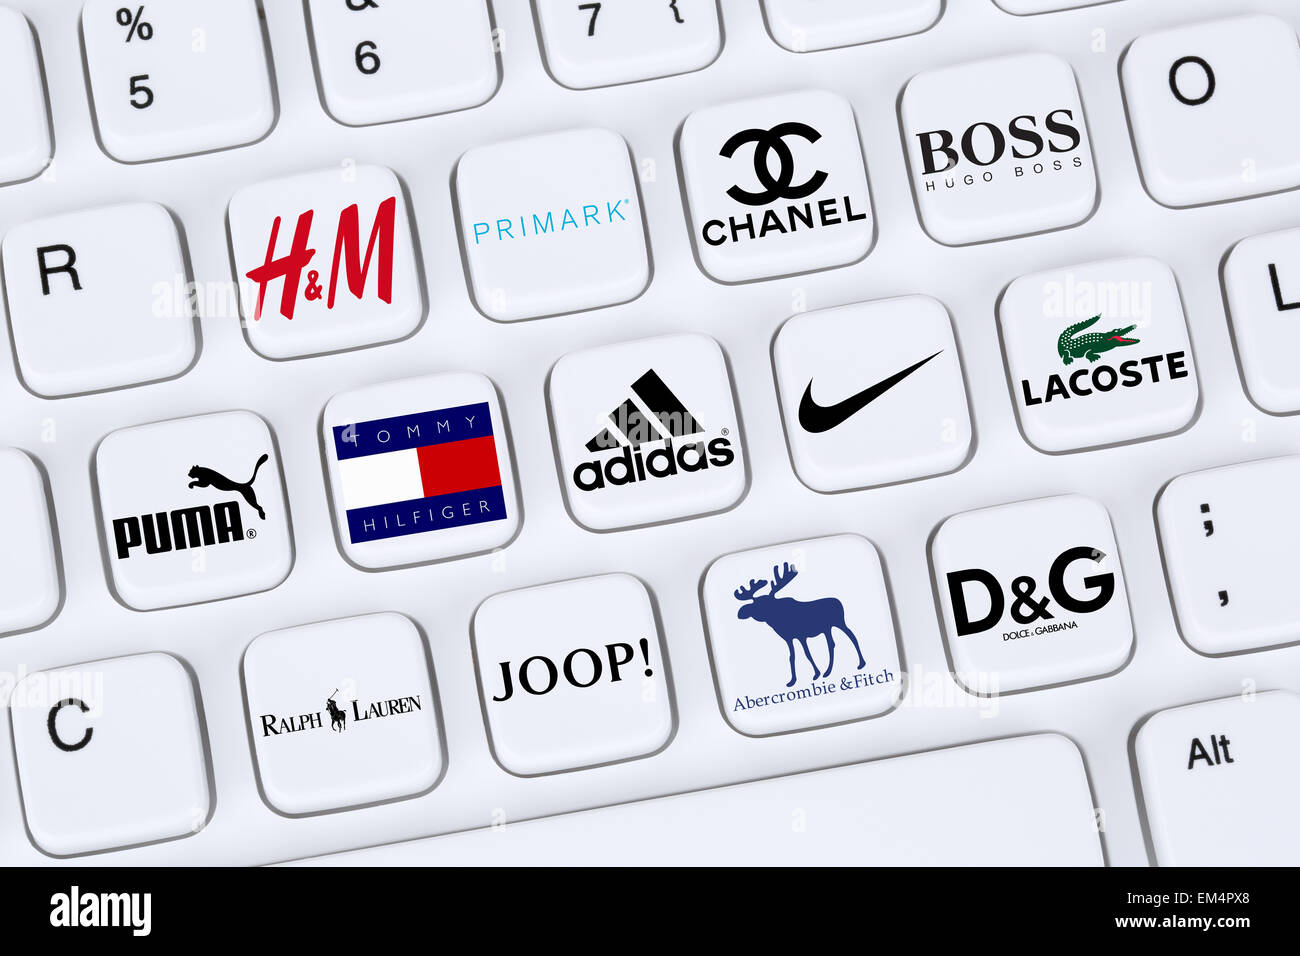 Berlín, Alemania - 7 de abril 2015: colección de logotipos de marcas de ropa de moda como Adidas, Puma, Nike, Primark, Abercrombie y Fotografía de - Alamy